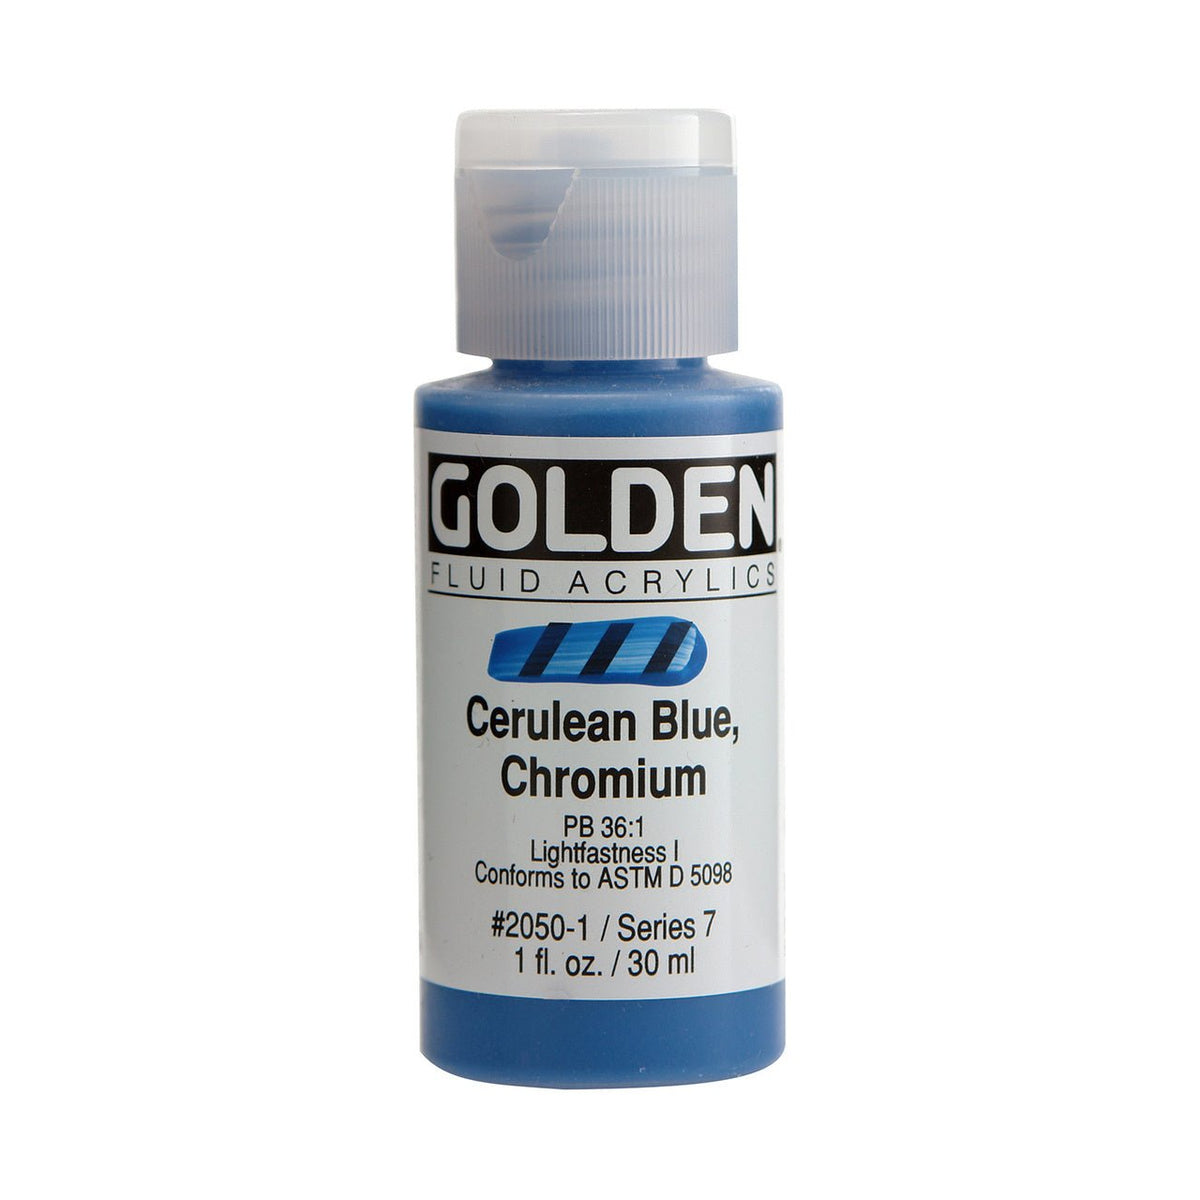 Golden Fluid Acrylic Cerulean Blue Chromium 1 oz - merriartist.com